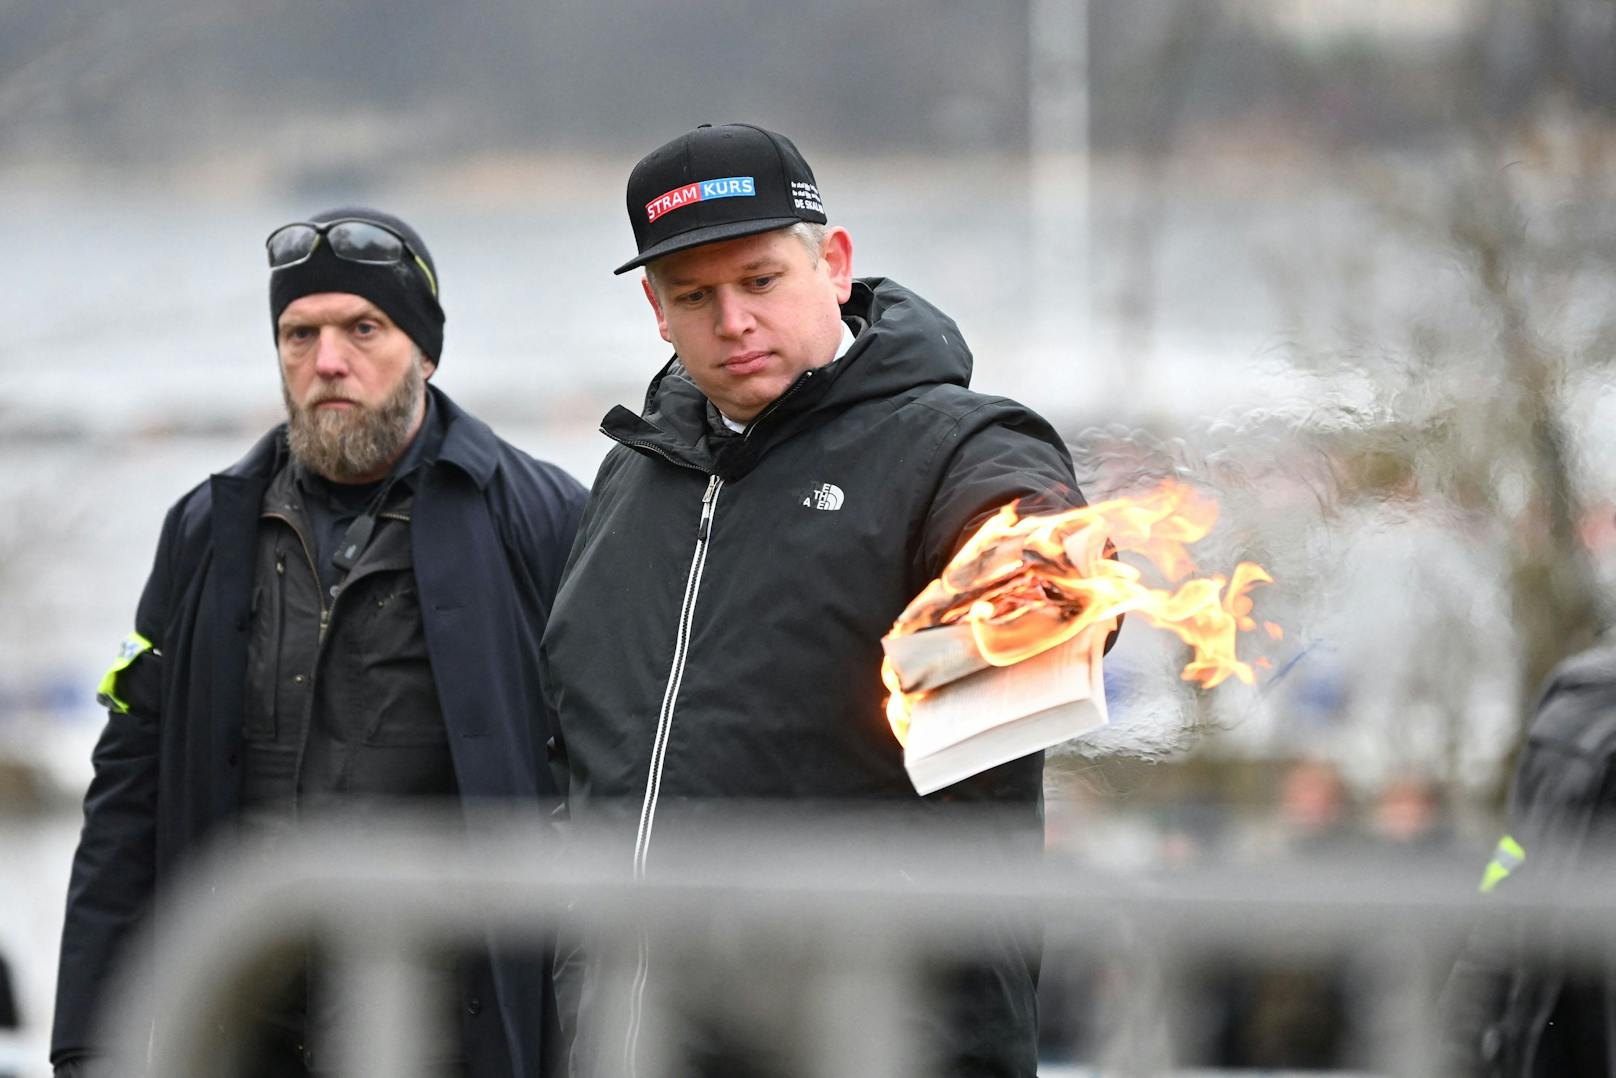 Polizei genehmigt Koran-Verbrennung bei Demo